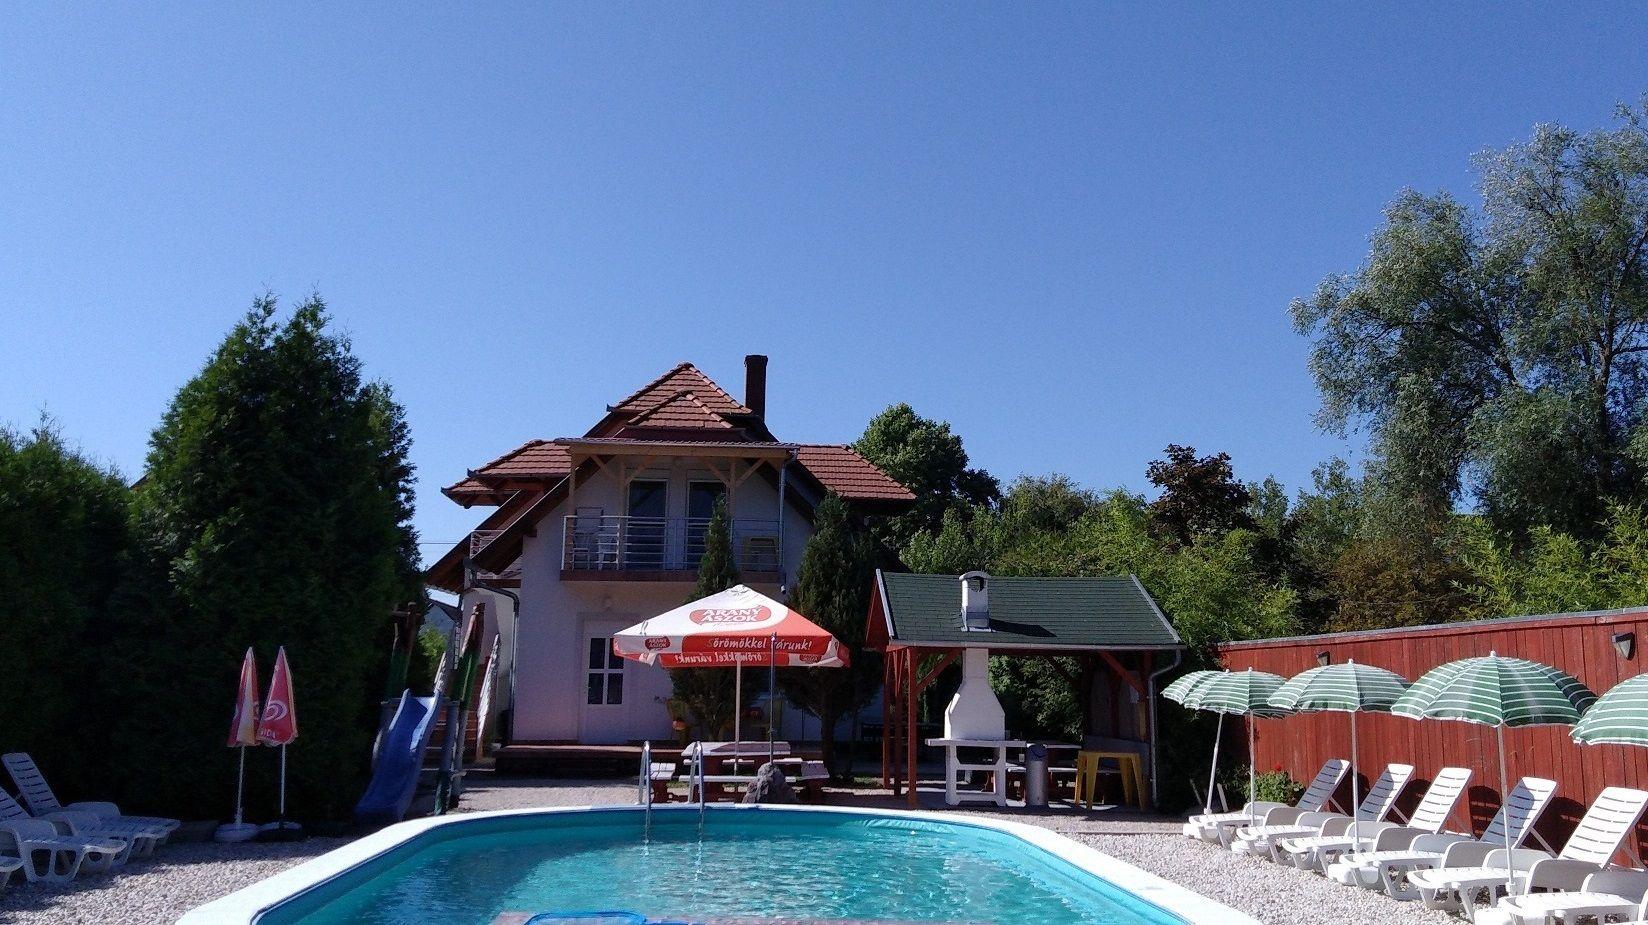 Ferienhaus mit Pool direkt am See  in Europa